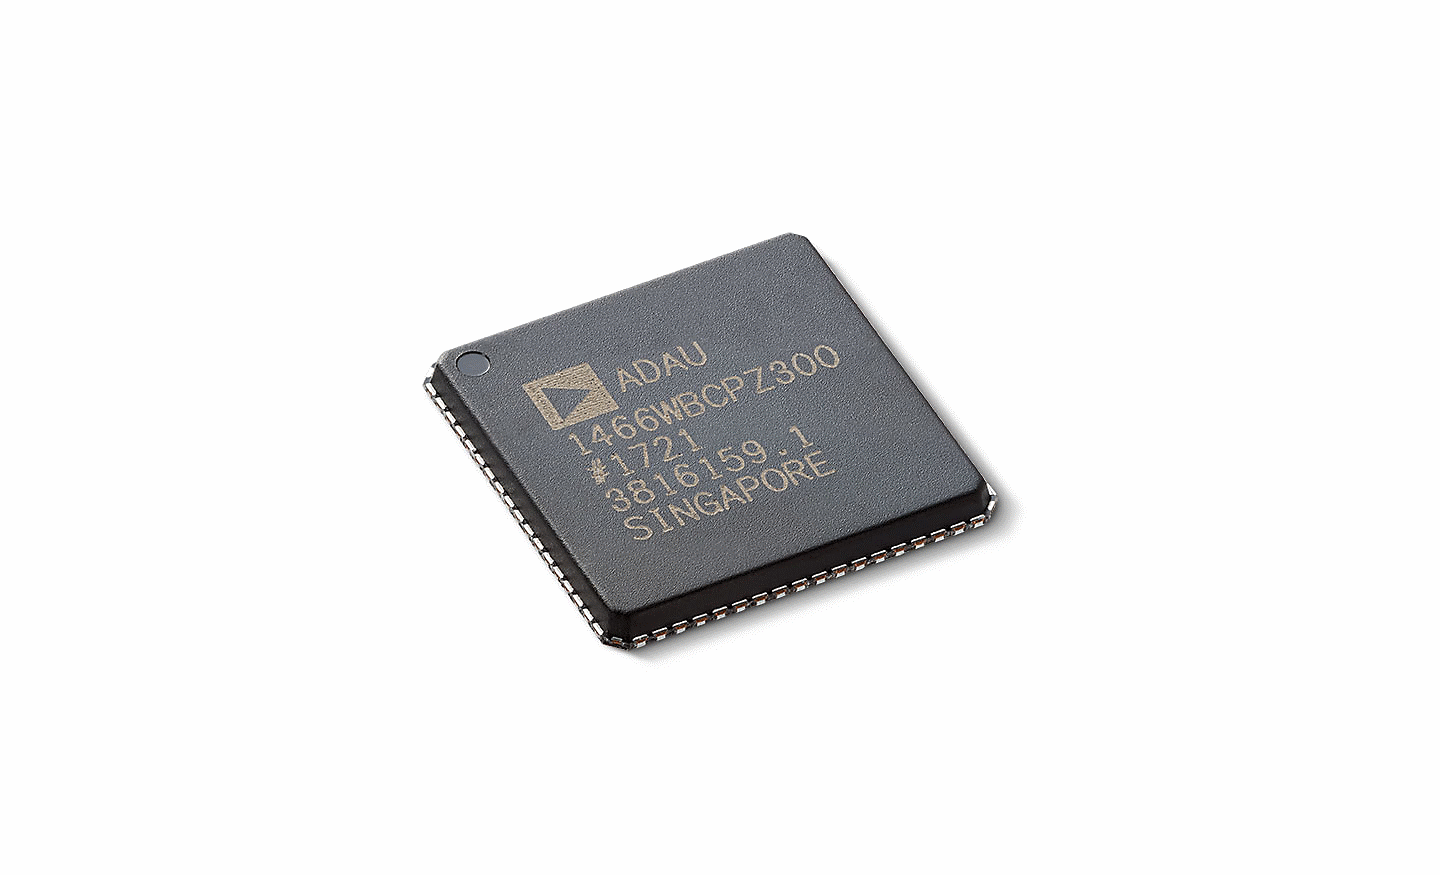 Gambar close-up chip pemrosesan suara XAV-9000ES.